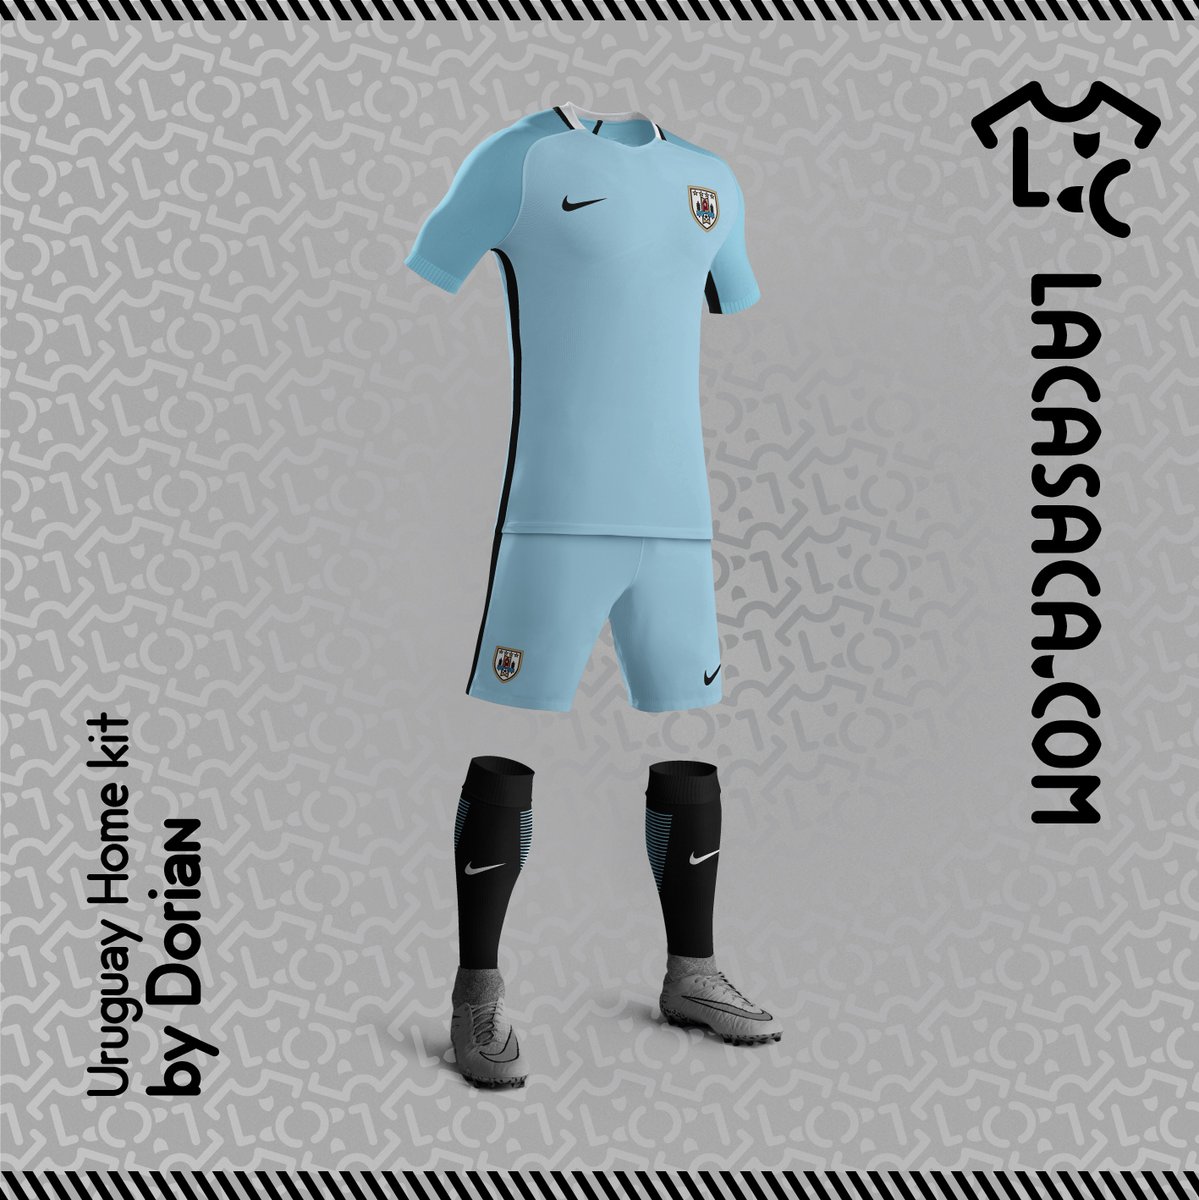 Uruguay y Nike LaCasaca